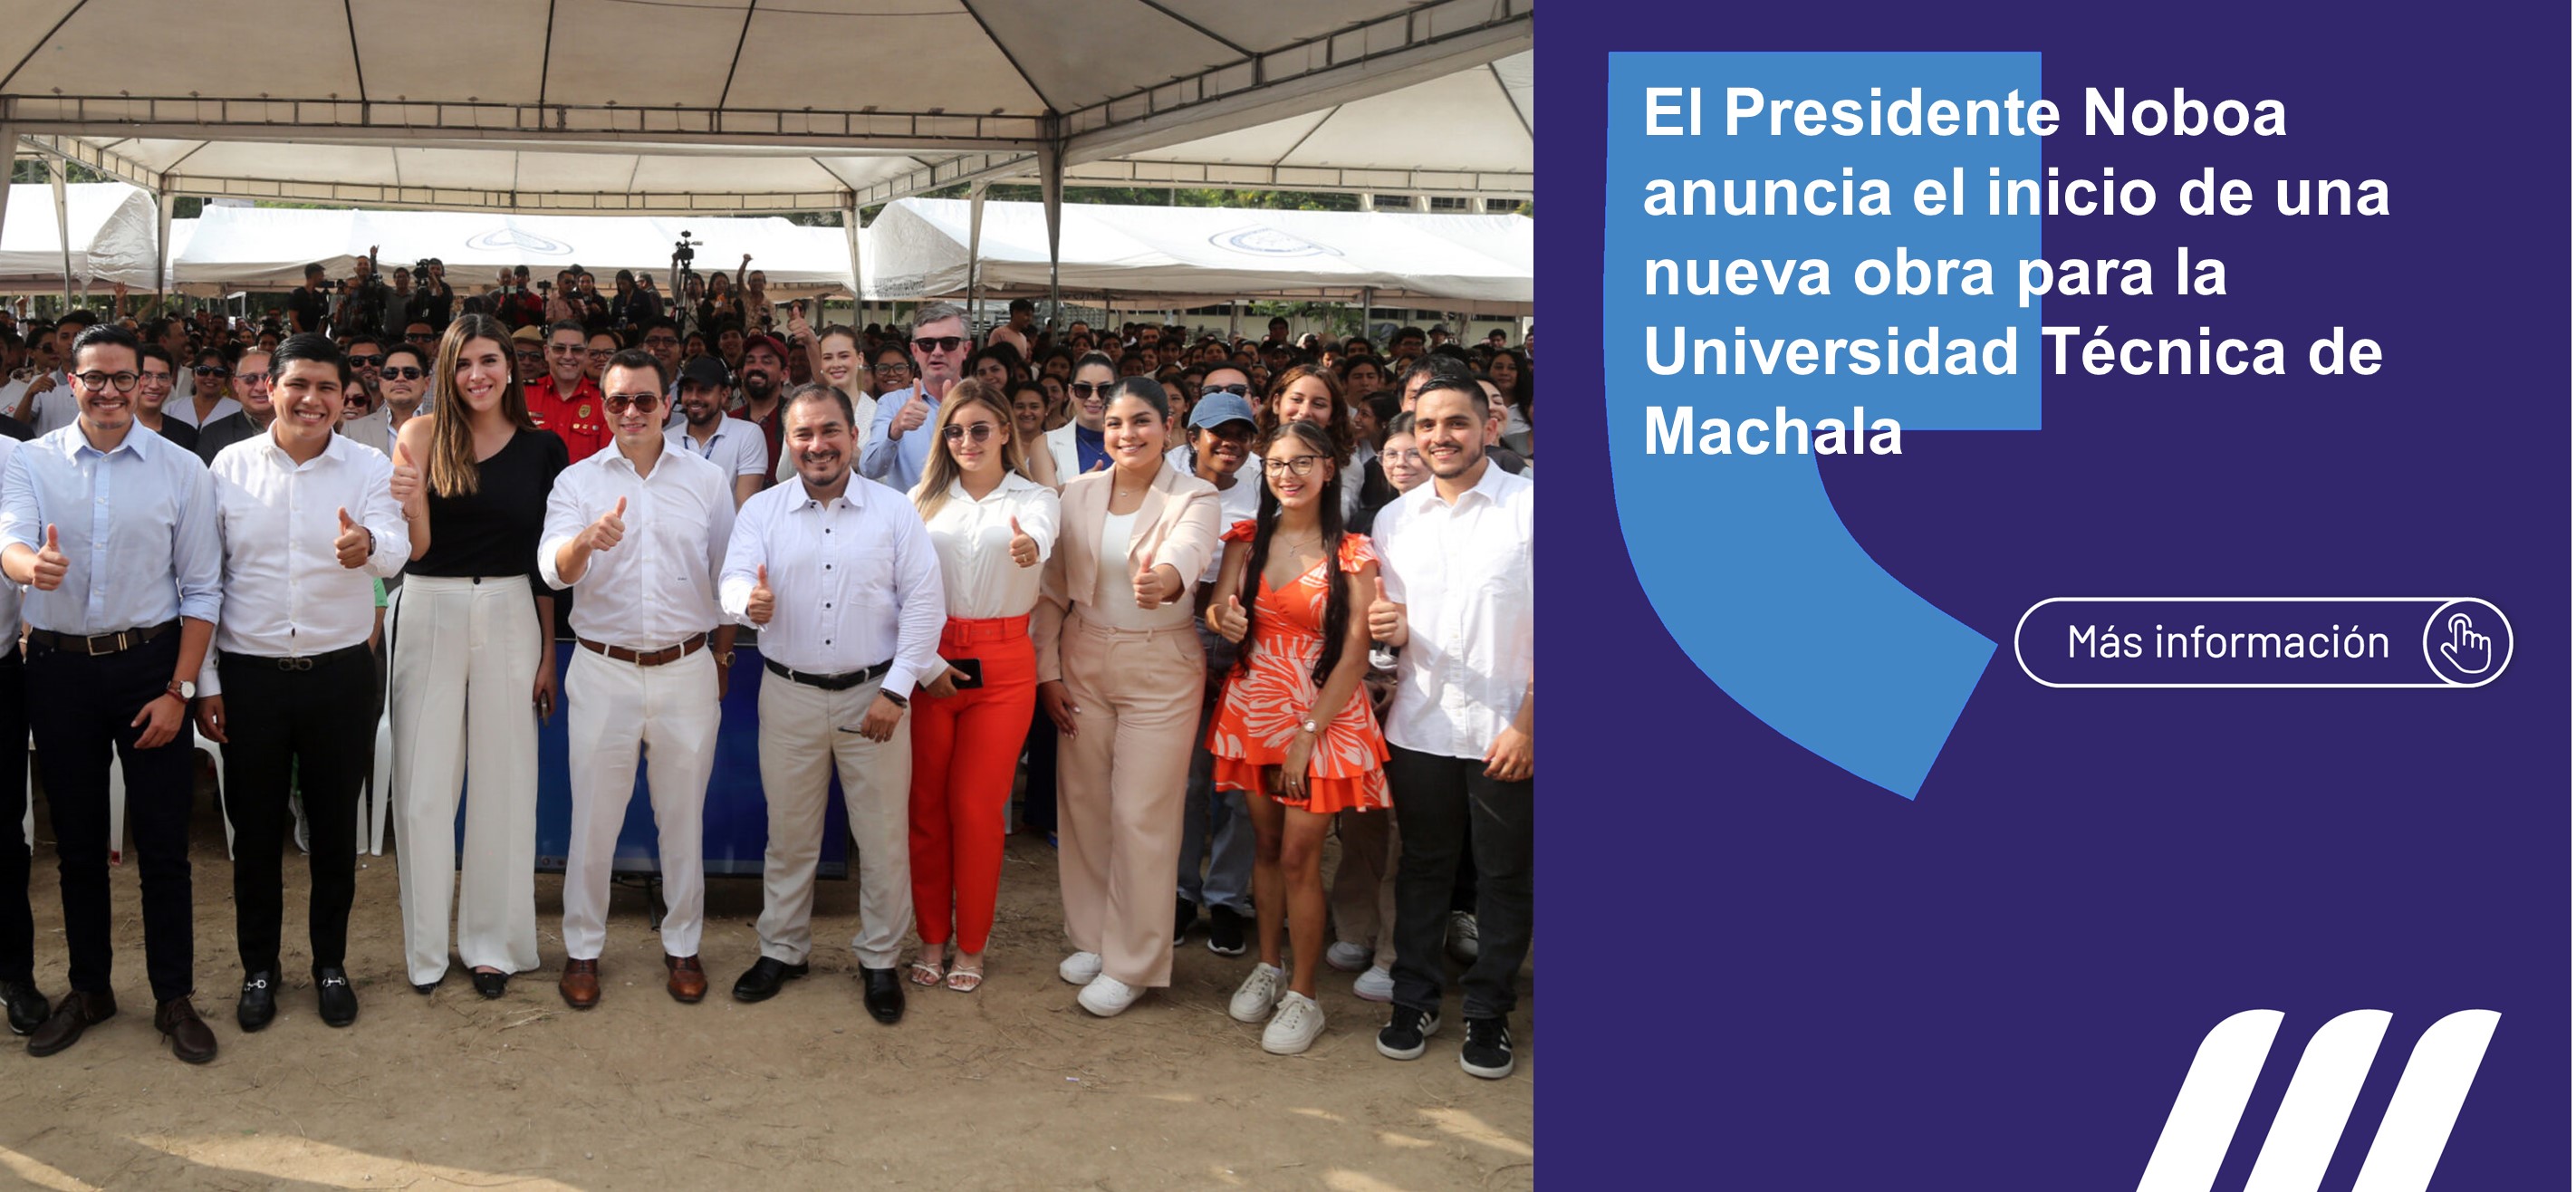 El presidente de la República, Daniel Noboa, anunció el inicio de la construcción del nuevo edificio de la Universidad Técnica de Machala.